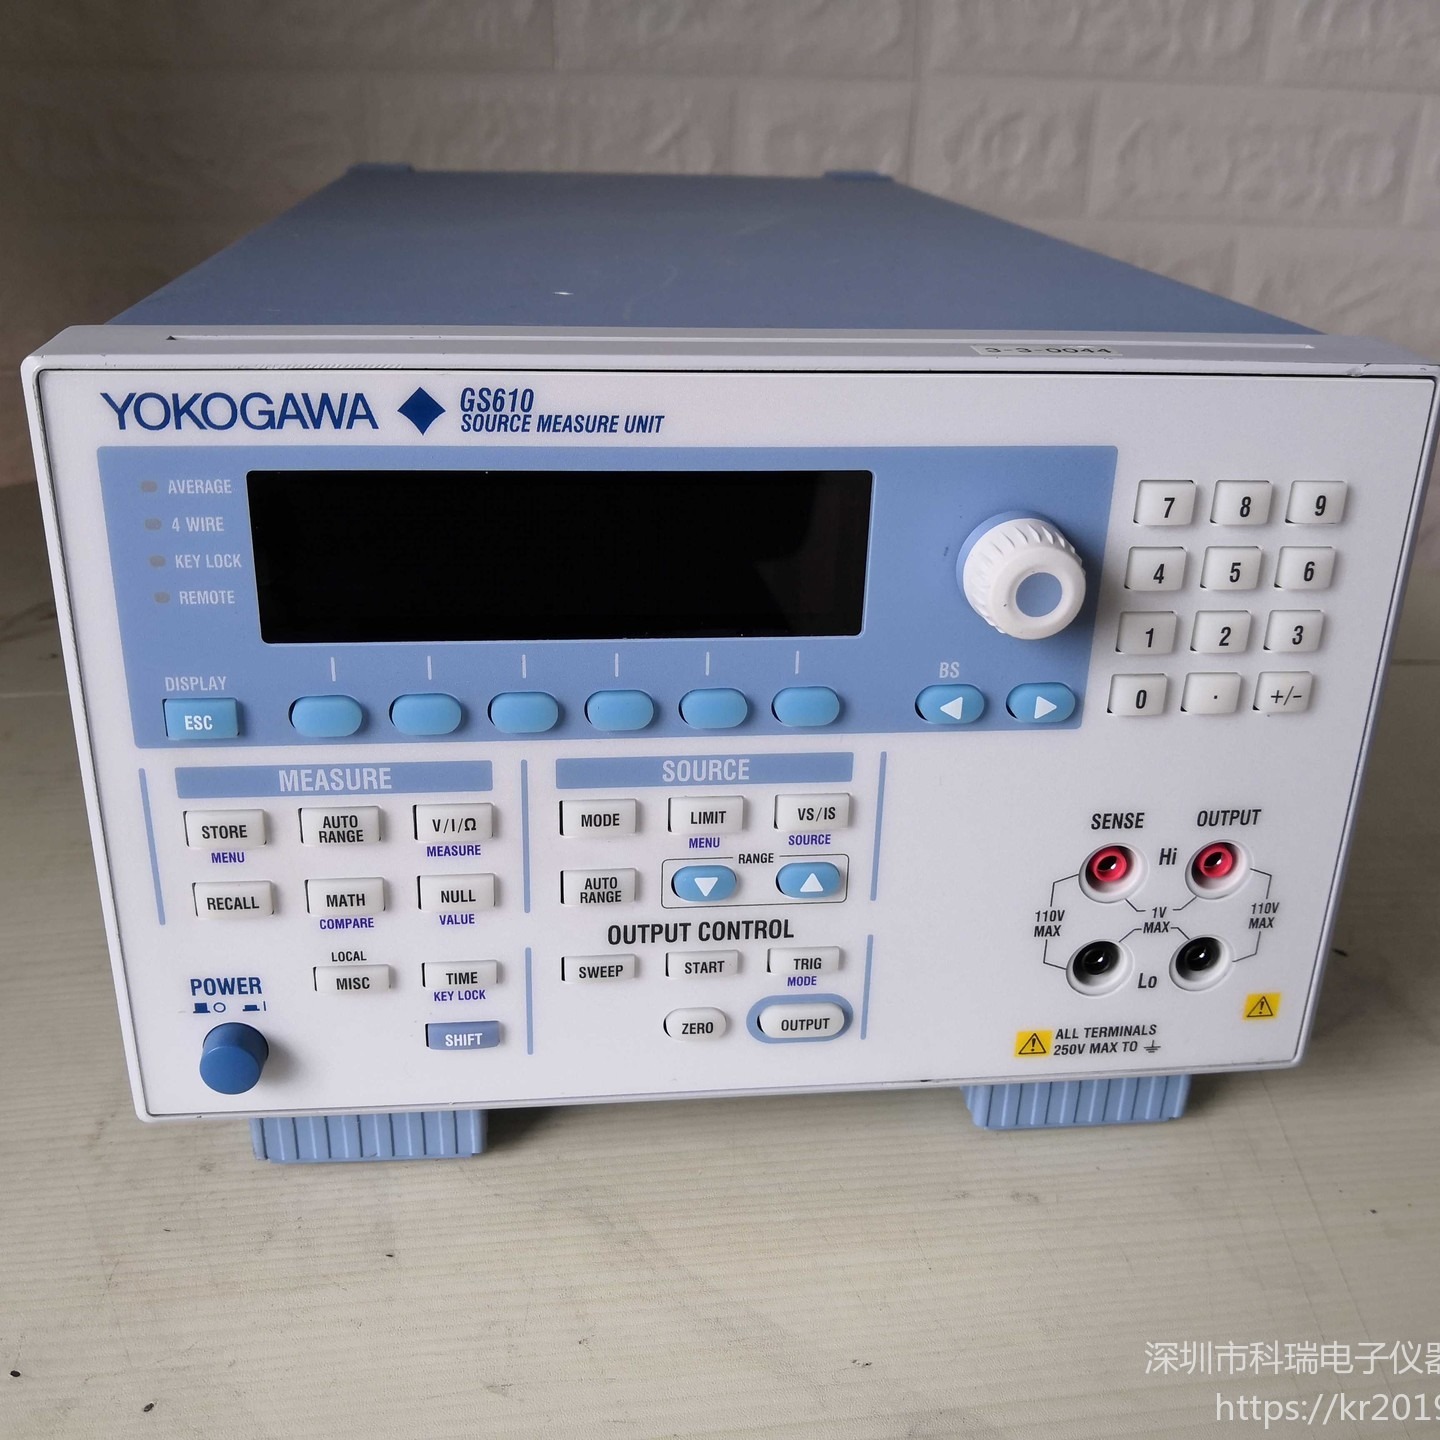 出售/回收 横河YOKOGOWK GS610 信号源测量单元 火热销售